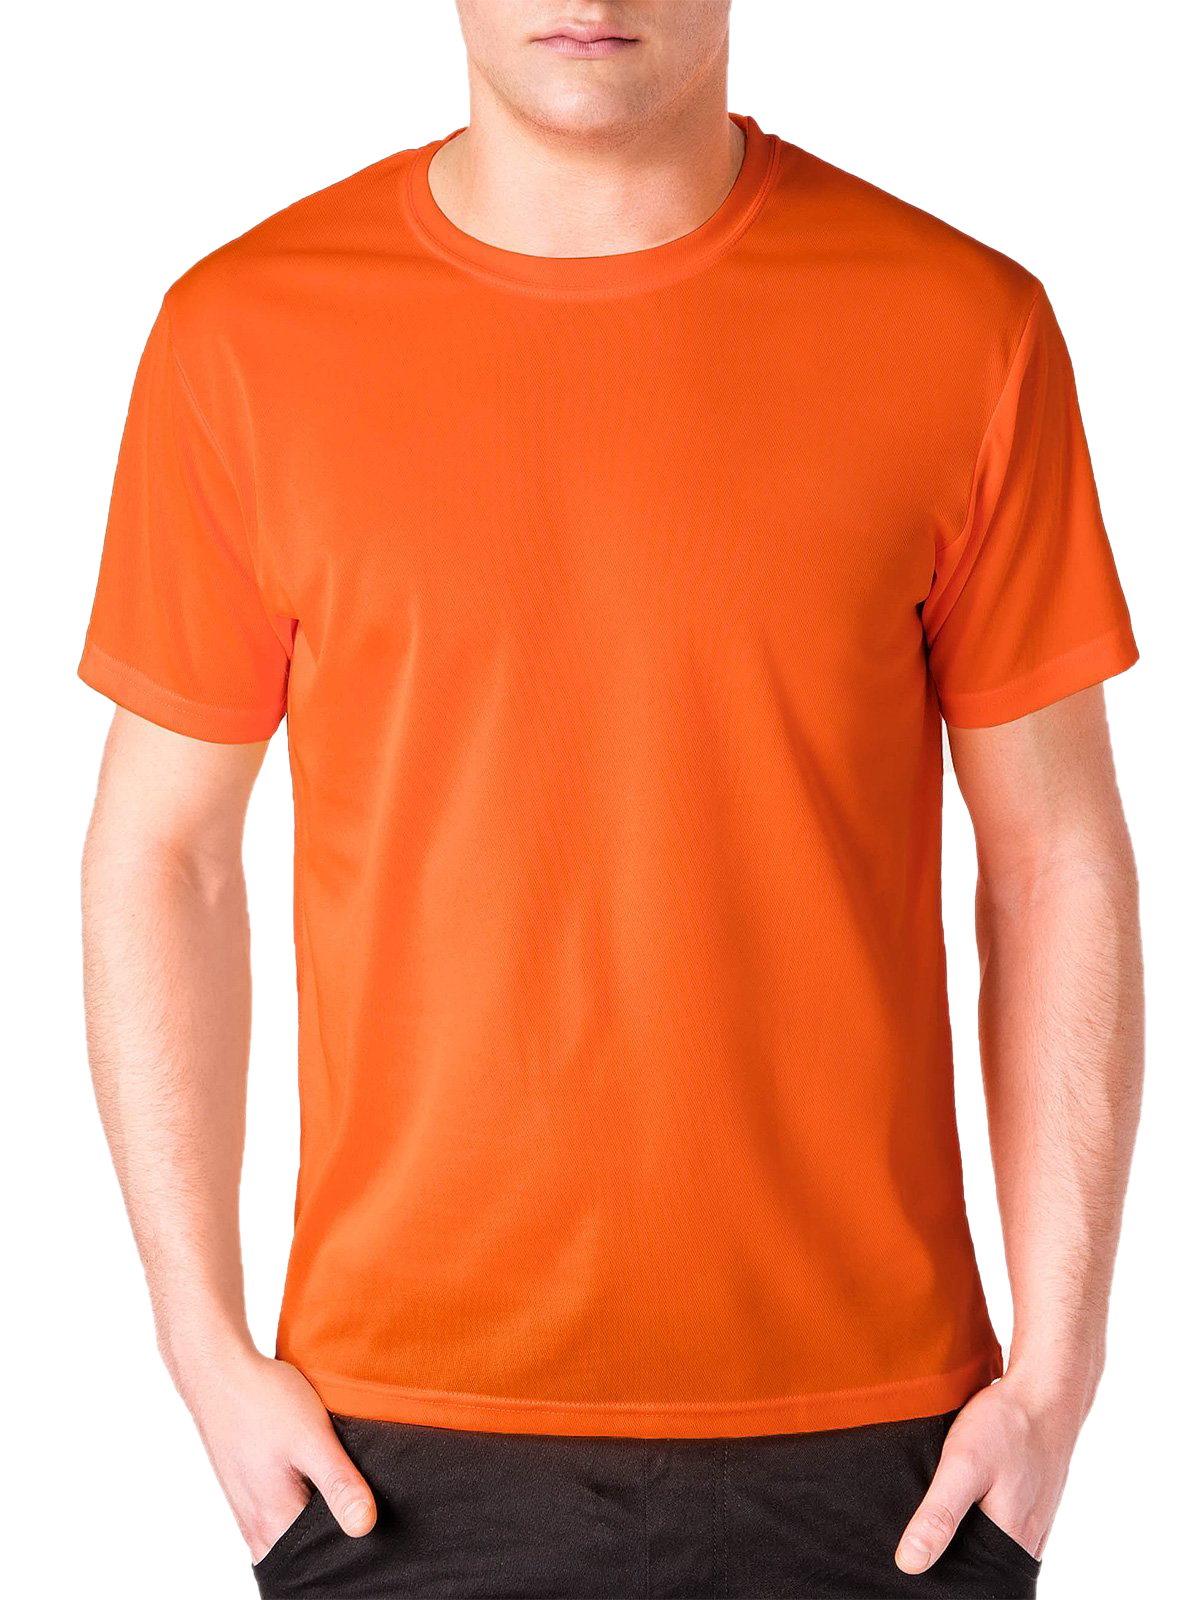 Plain naranja camiseta PNG descarga gratuita